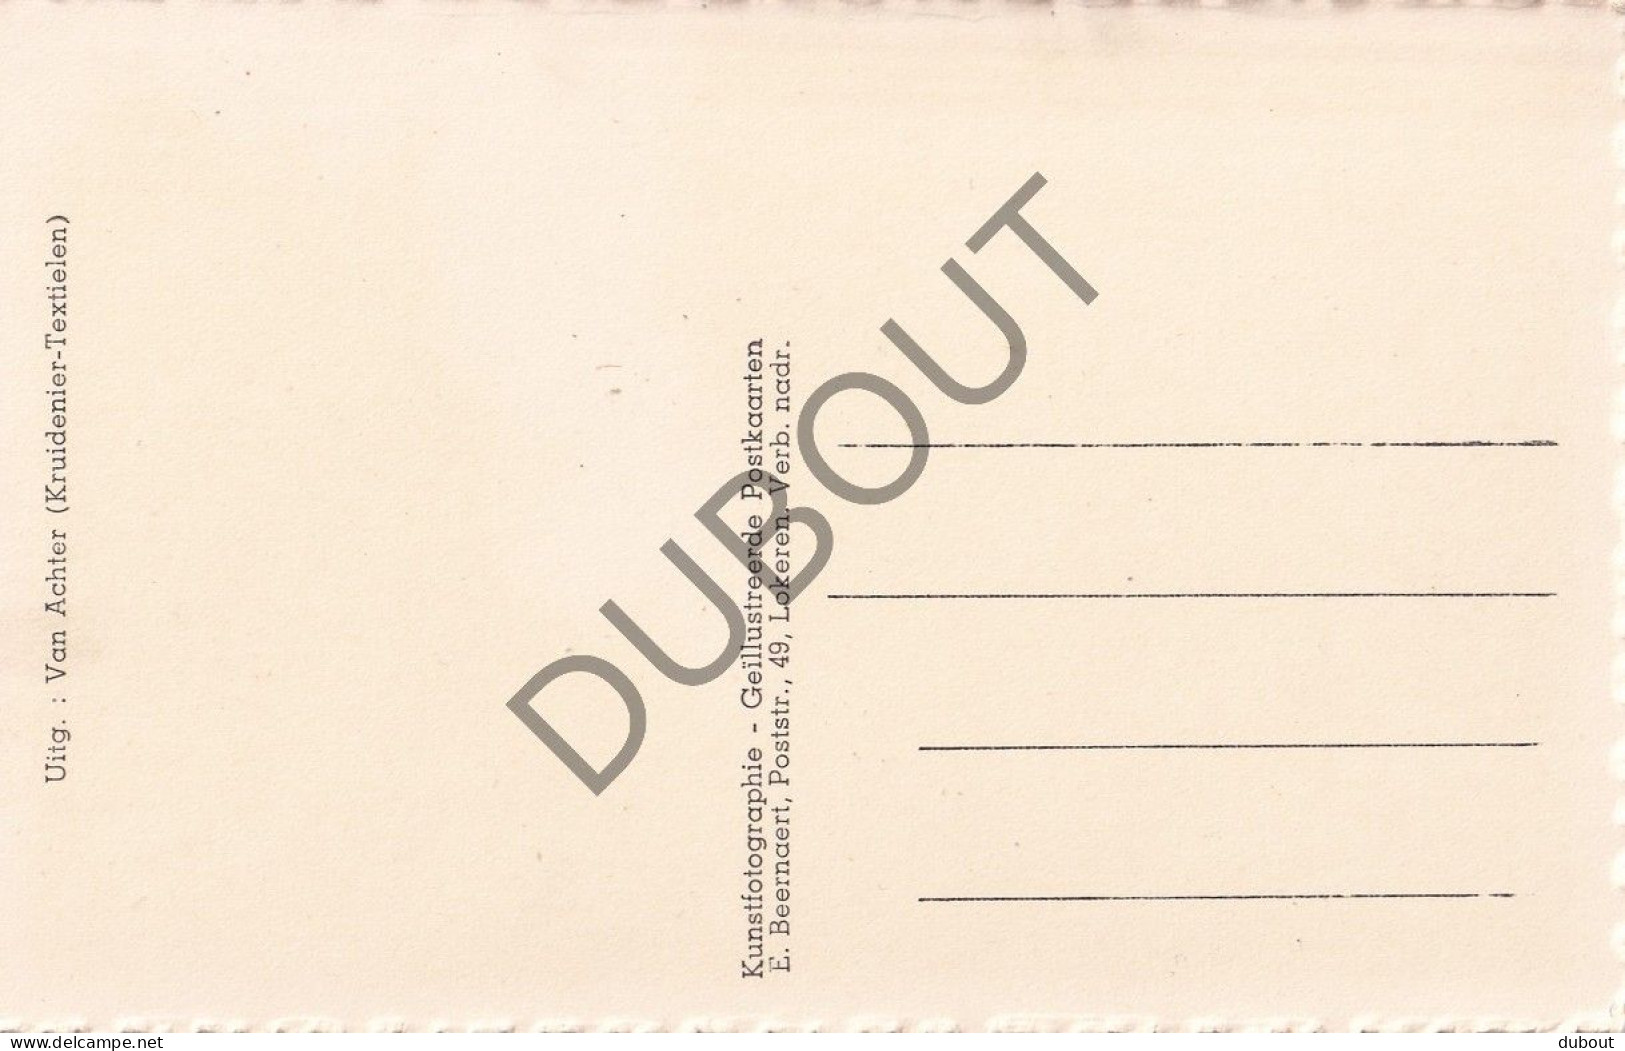 Postkaart/Carte Postale - Opdorp - Gemeentehuis En Dries (C4638) - Buggenhout